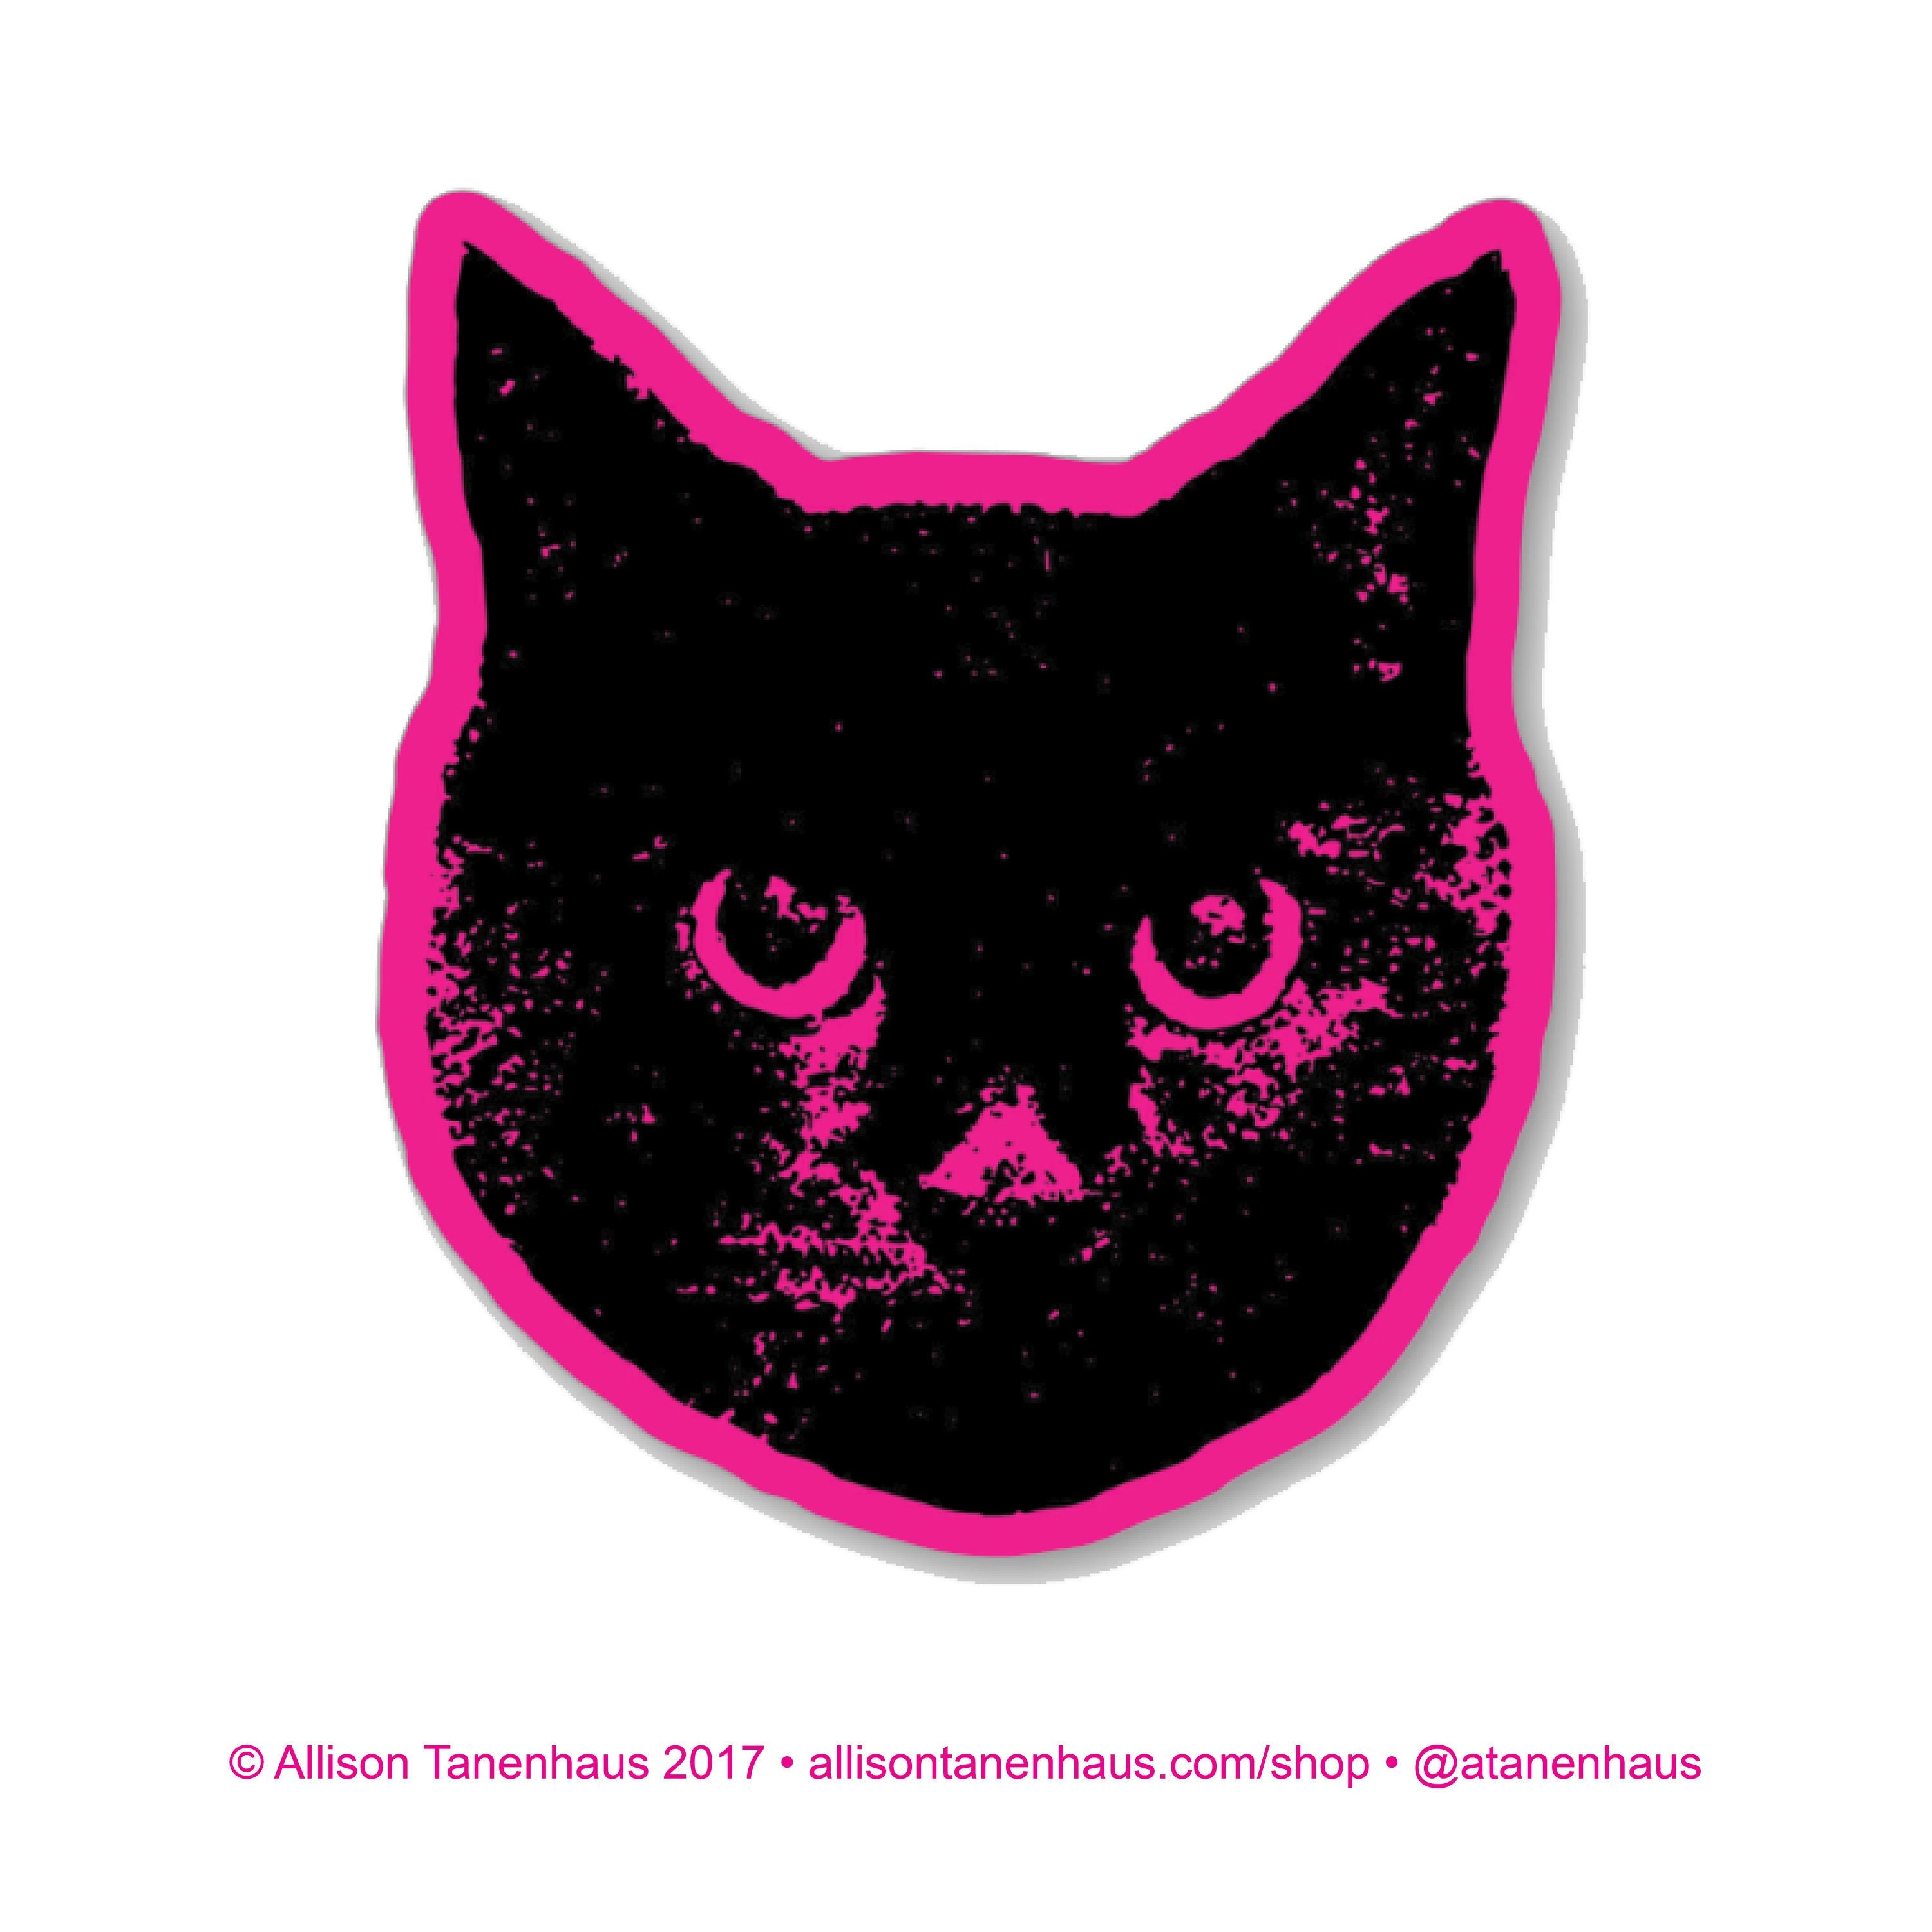 Cat Ephemera, Cat Journal Supplies, Kitten Junk Journal, Digital Download,  DIY Cat Stickers, Junk Journal Supplies, Printable Ephemera 